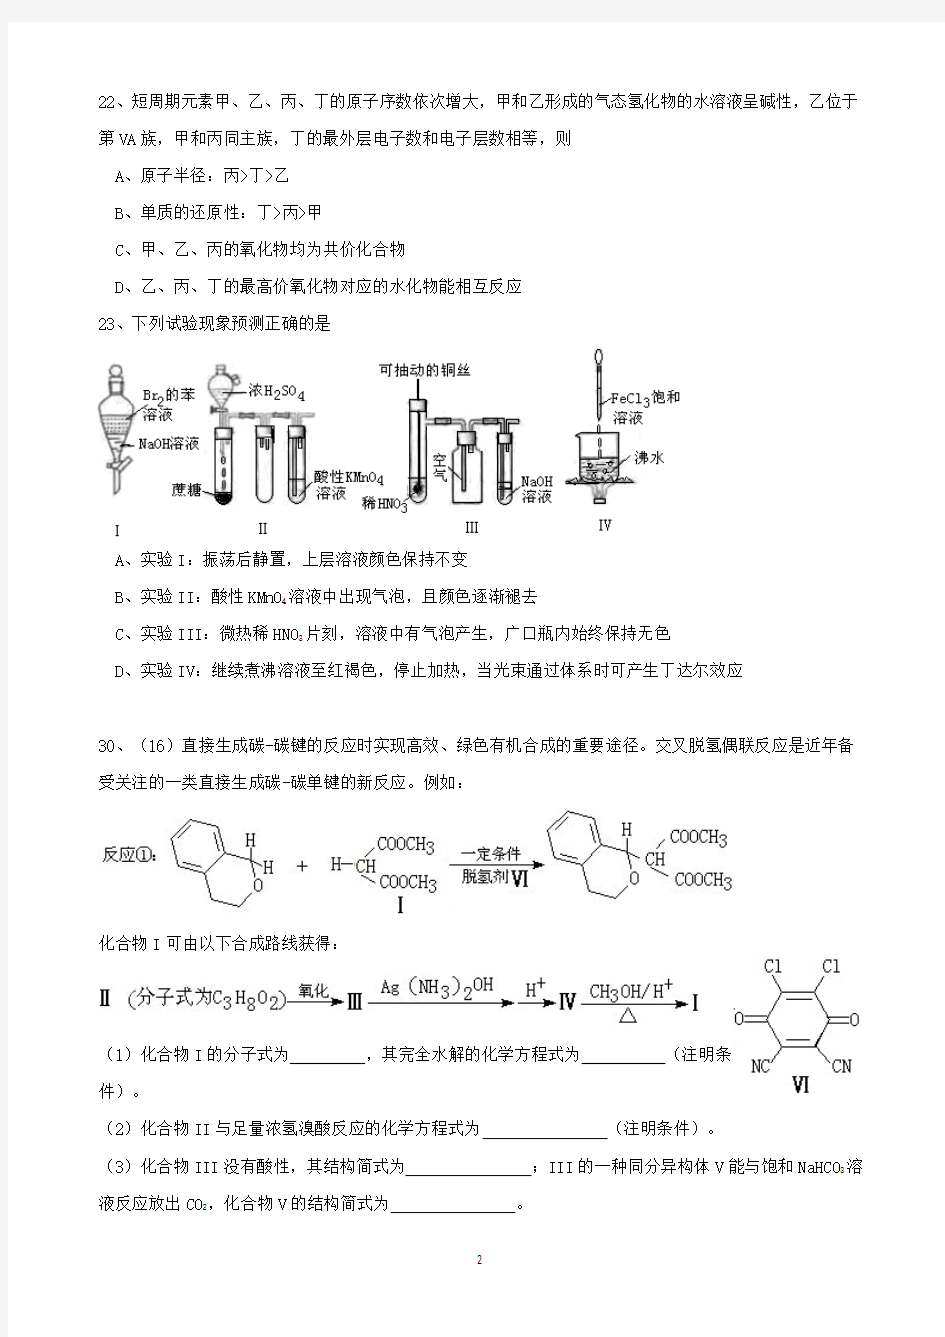 2011年广东高考化学卷真题(附详细答案)